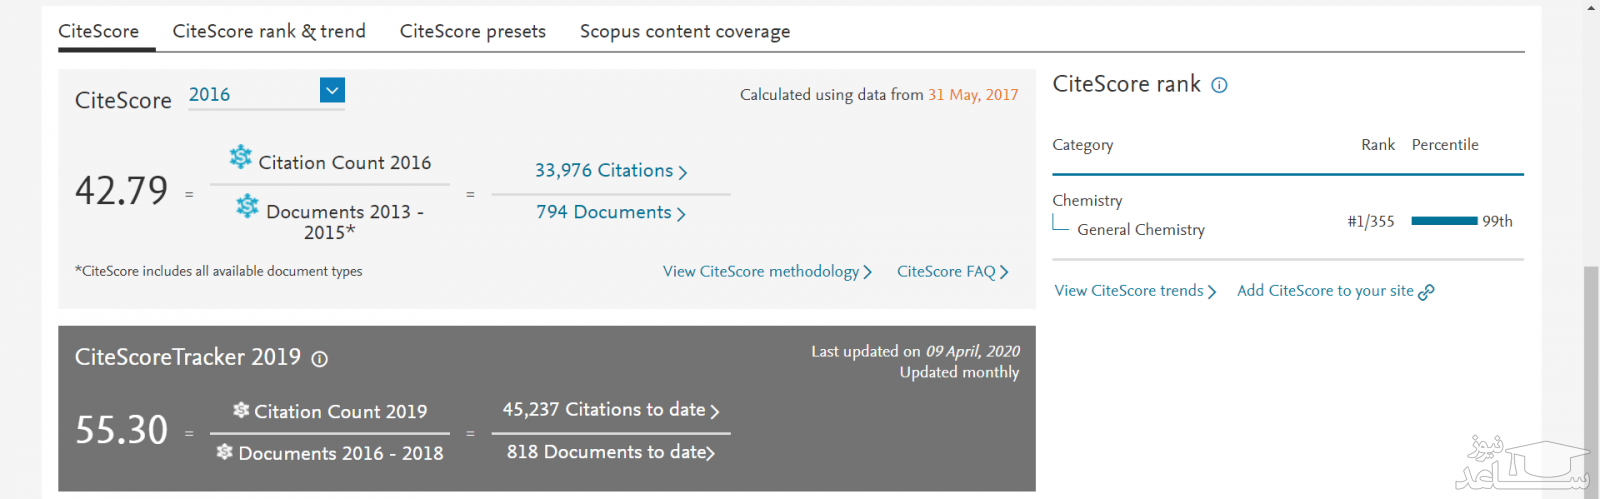 جزئیات دقیق تر نتایج جستجو در اسکوپوس